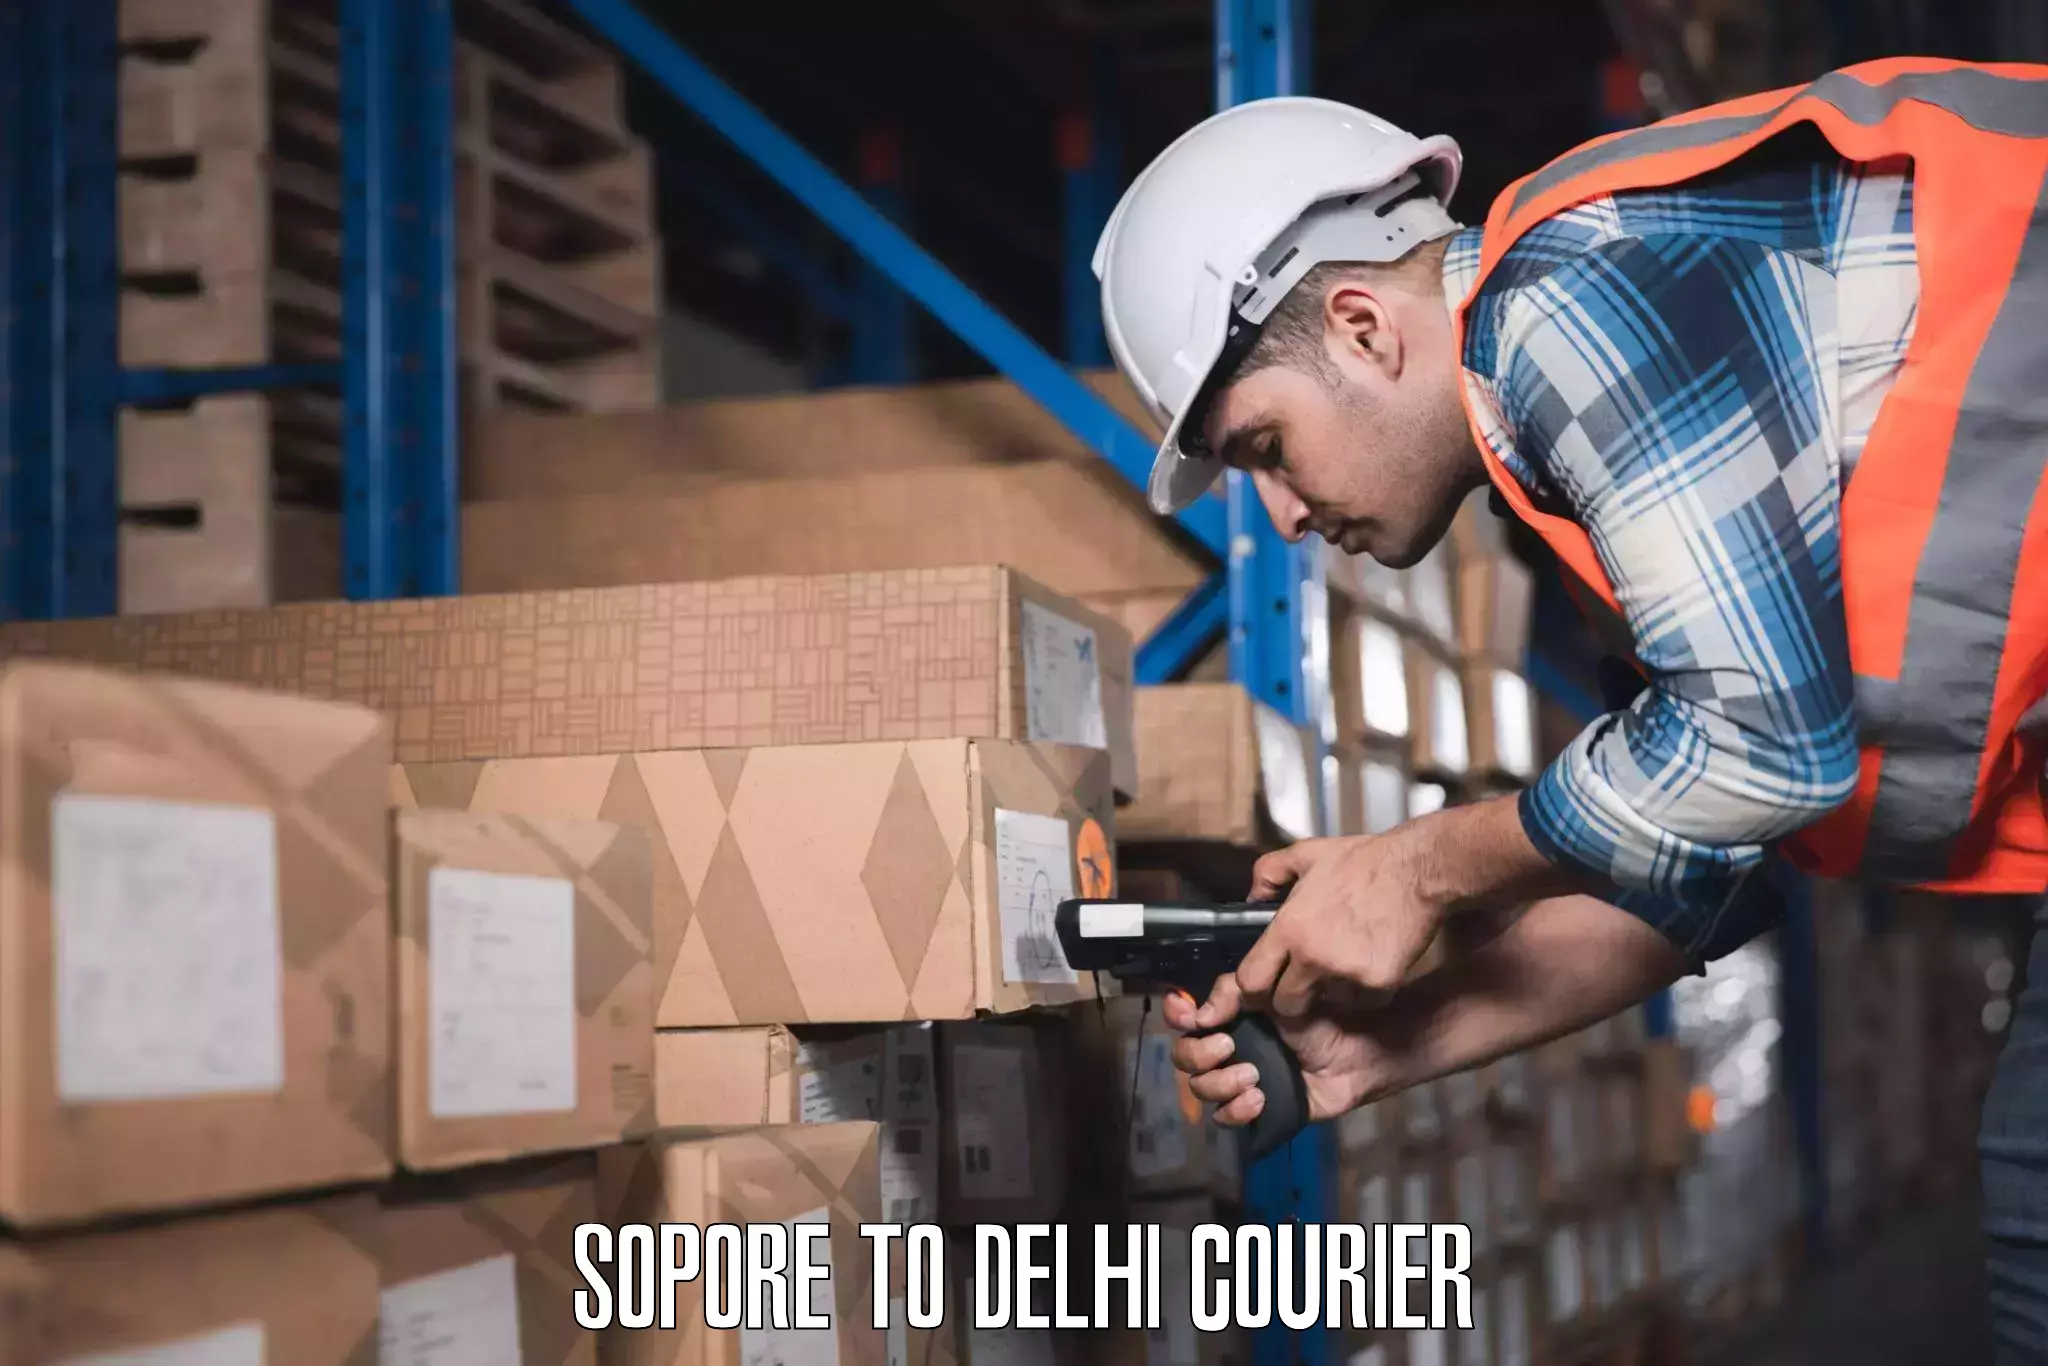 Digital baggage courier Sopore to NIT Delhi